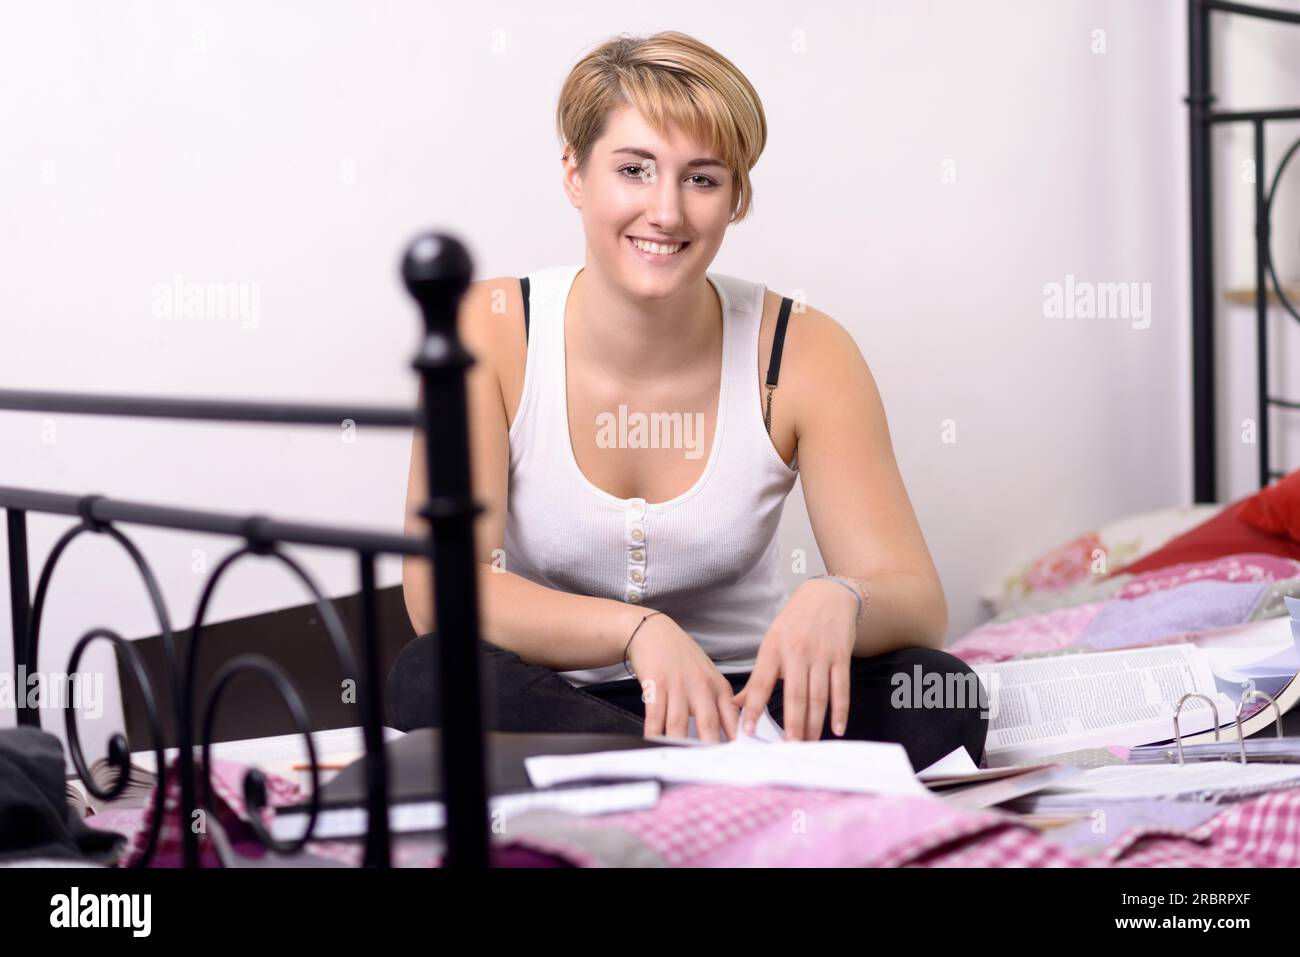 Sehen Sie sich eine lächelnde junge blonde Frau in lässiger Kleidung an, die mit gekreuzten Beinen auf ihrem Bett sitzt, während sie ein Buch scannt Stockfoto